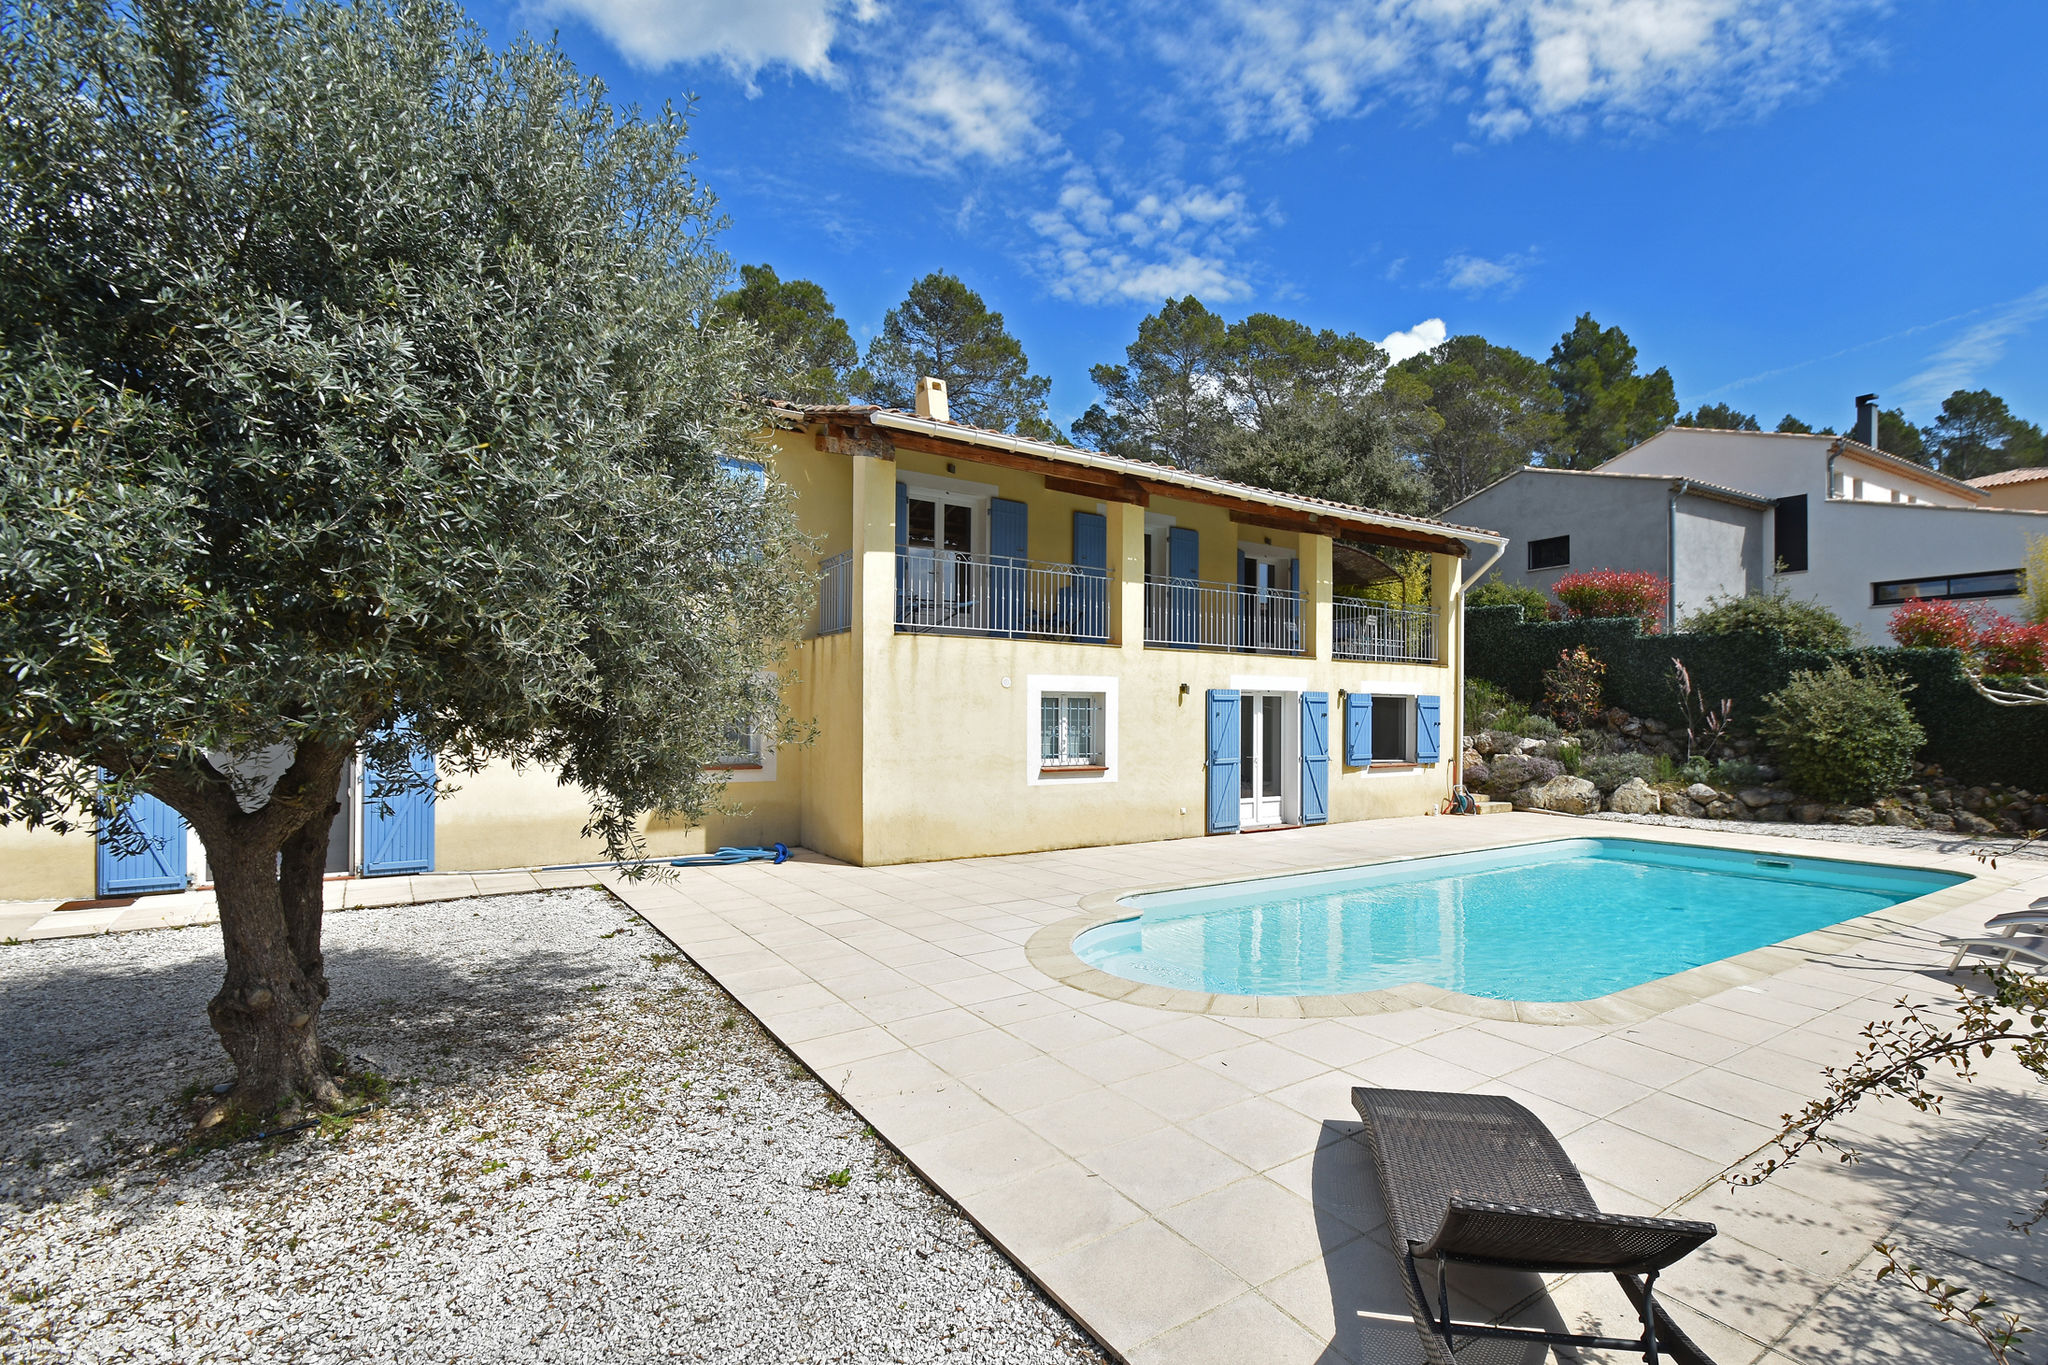 Confortable villa avec piscine privée, 30km de la côte d'Azur